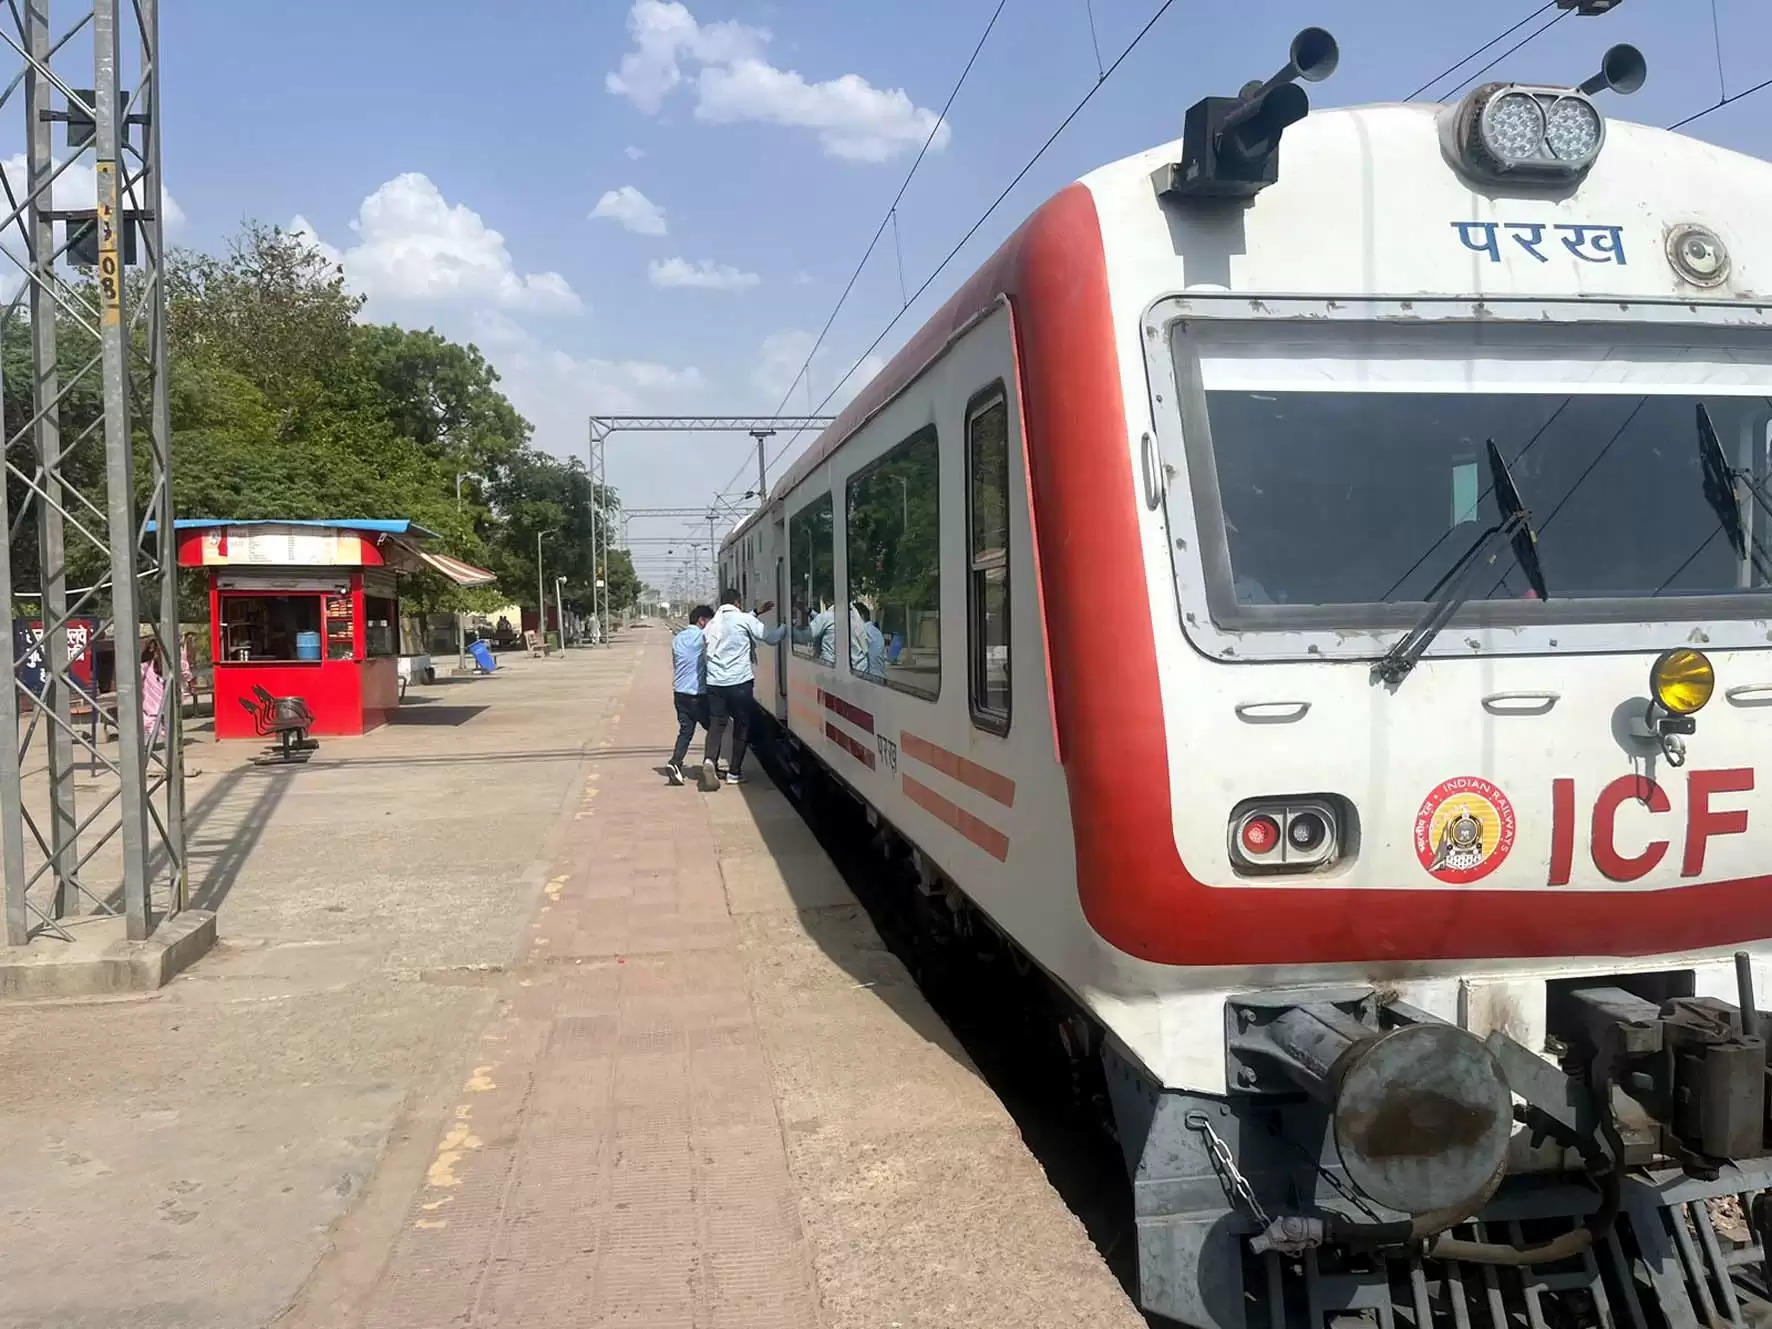   हिसार से सीधे दिल्ली के लिए जल्द विद्युत संचालित नई ट्रेन मिलने की संभावना